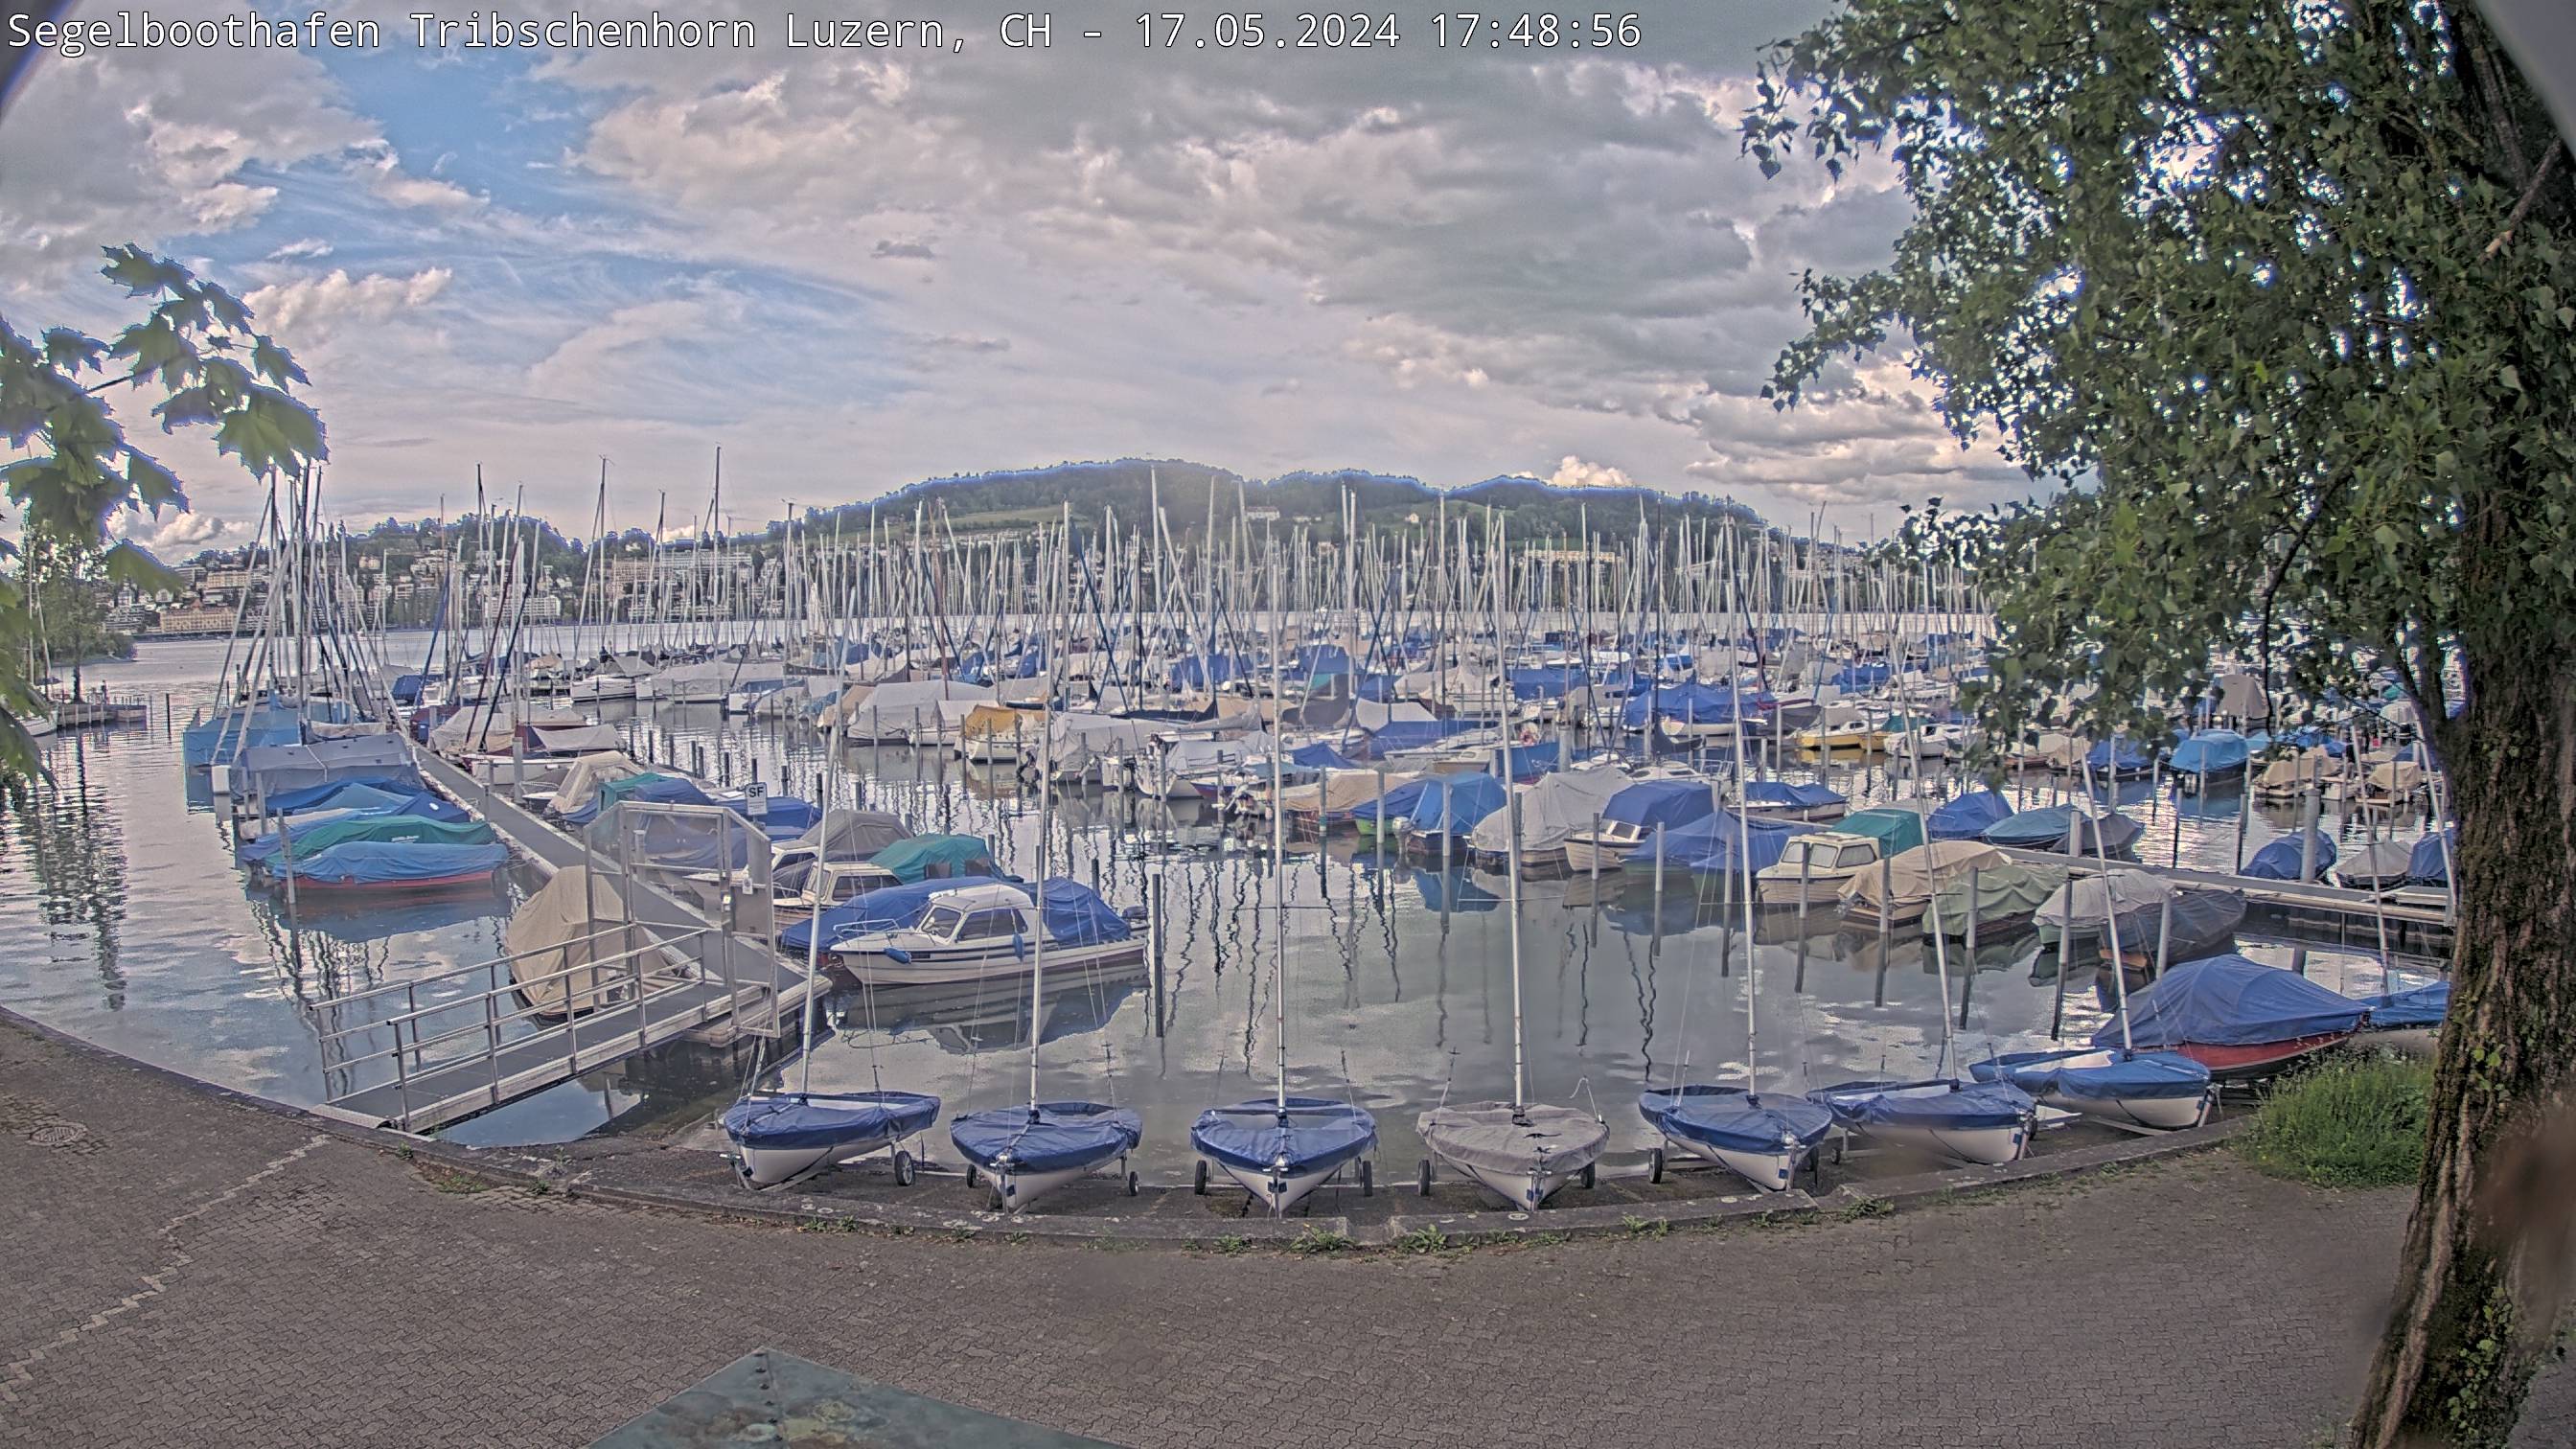 Livecam Segelboothafen Tribschenhorn